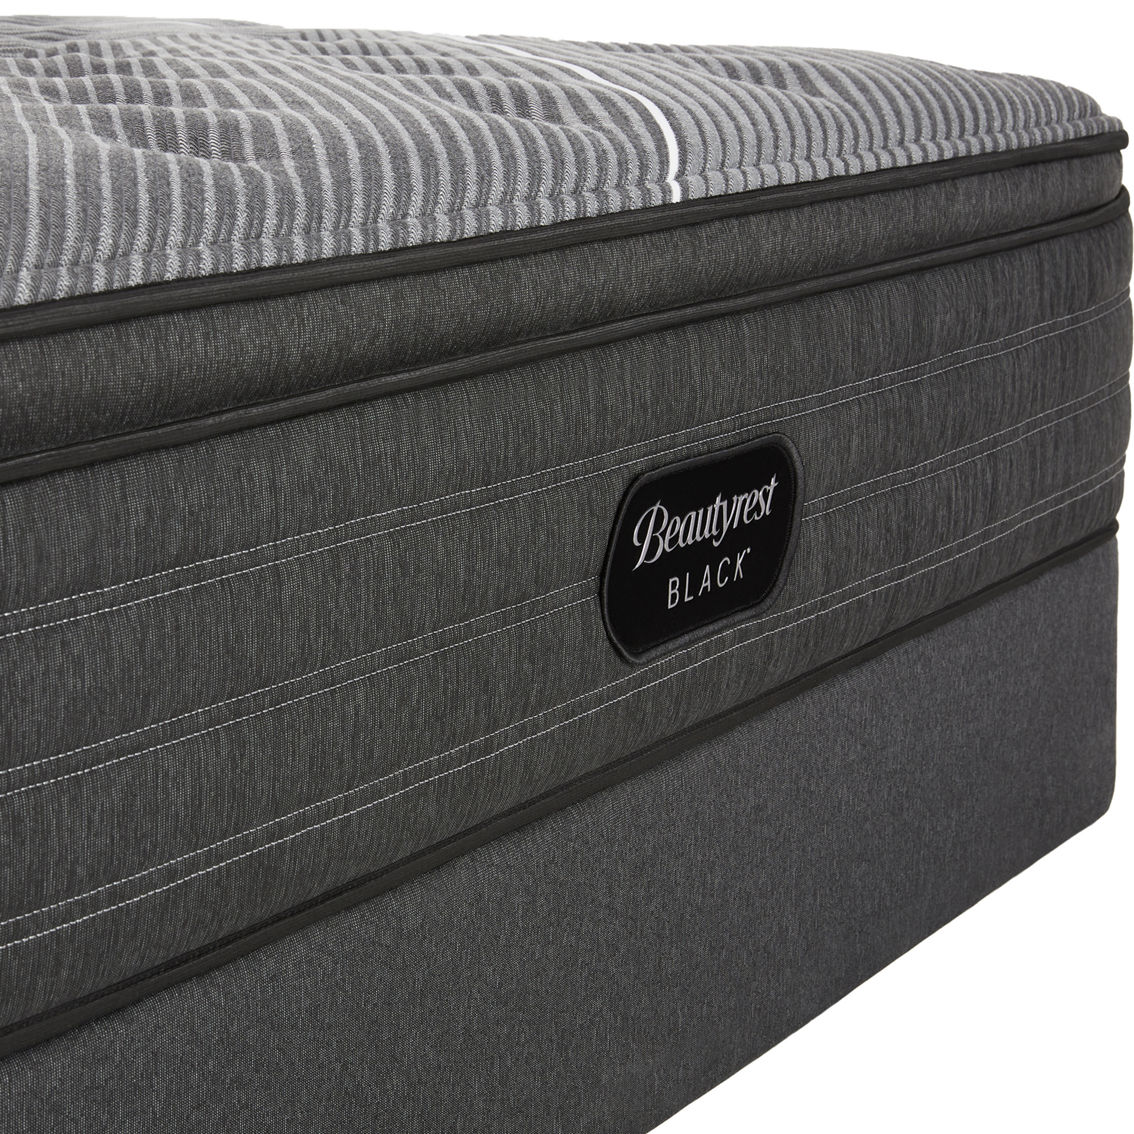 Beautyrest Black B-Class 14 in. Plush Pillow Top Mattress - Image 4 of 6